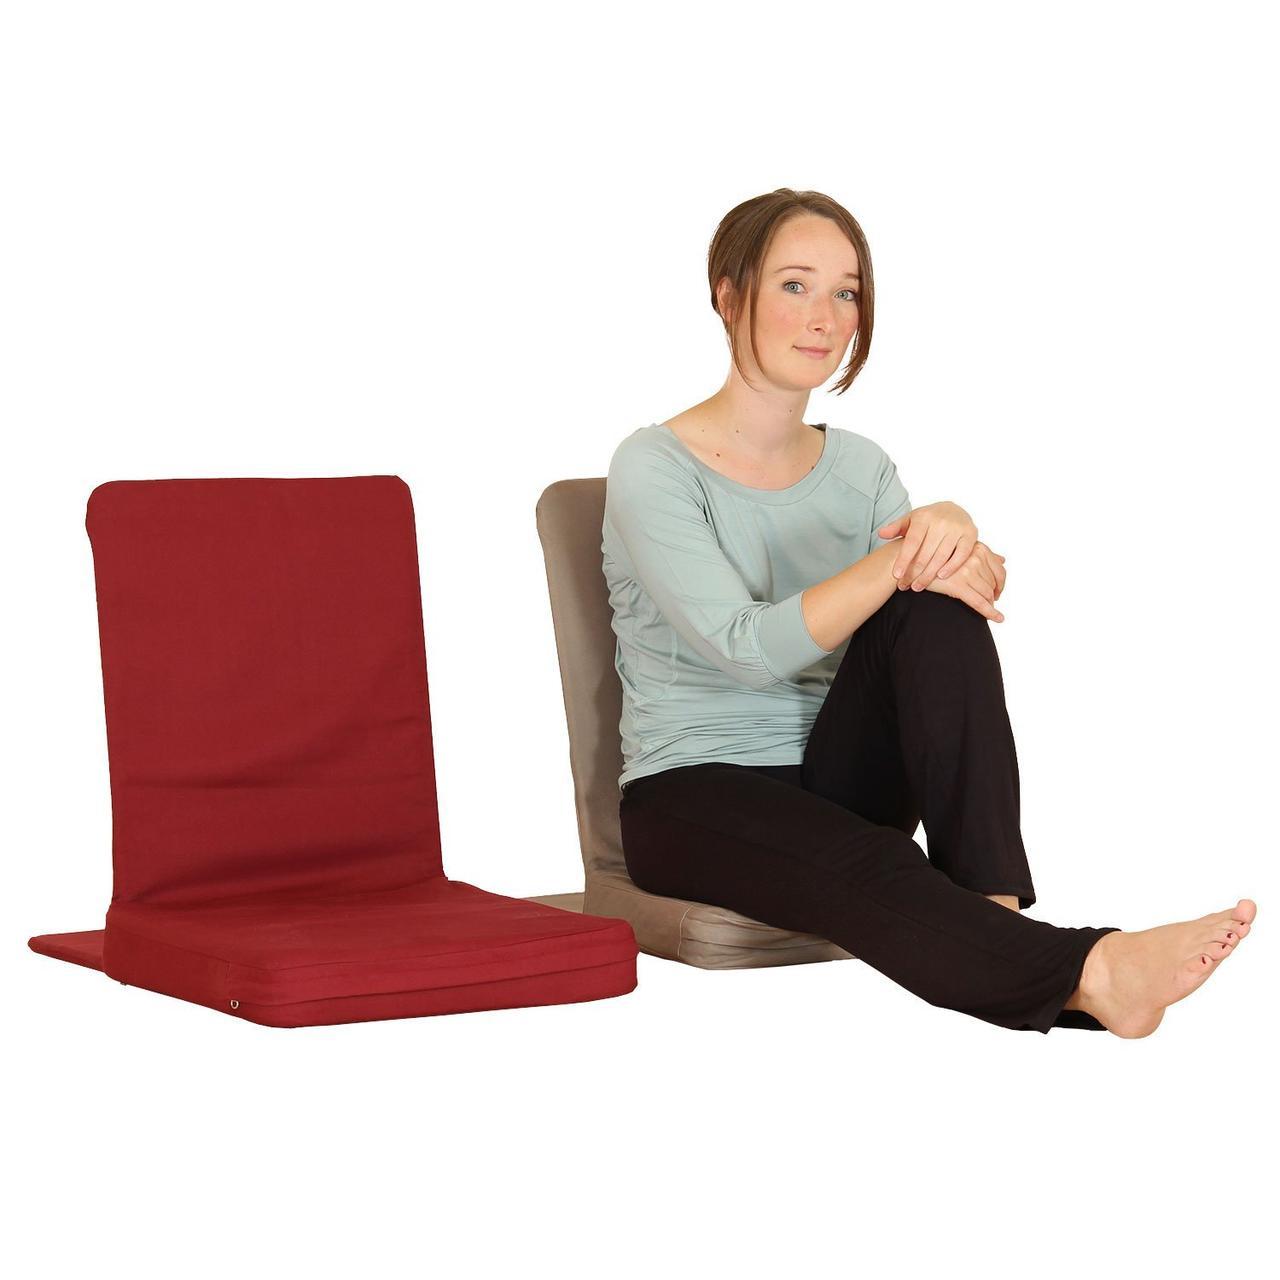 В НАЯВНОСТІ! Крісло стілець складаний із подушкою для медитації BlackJack